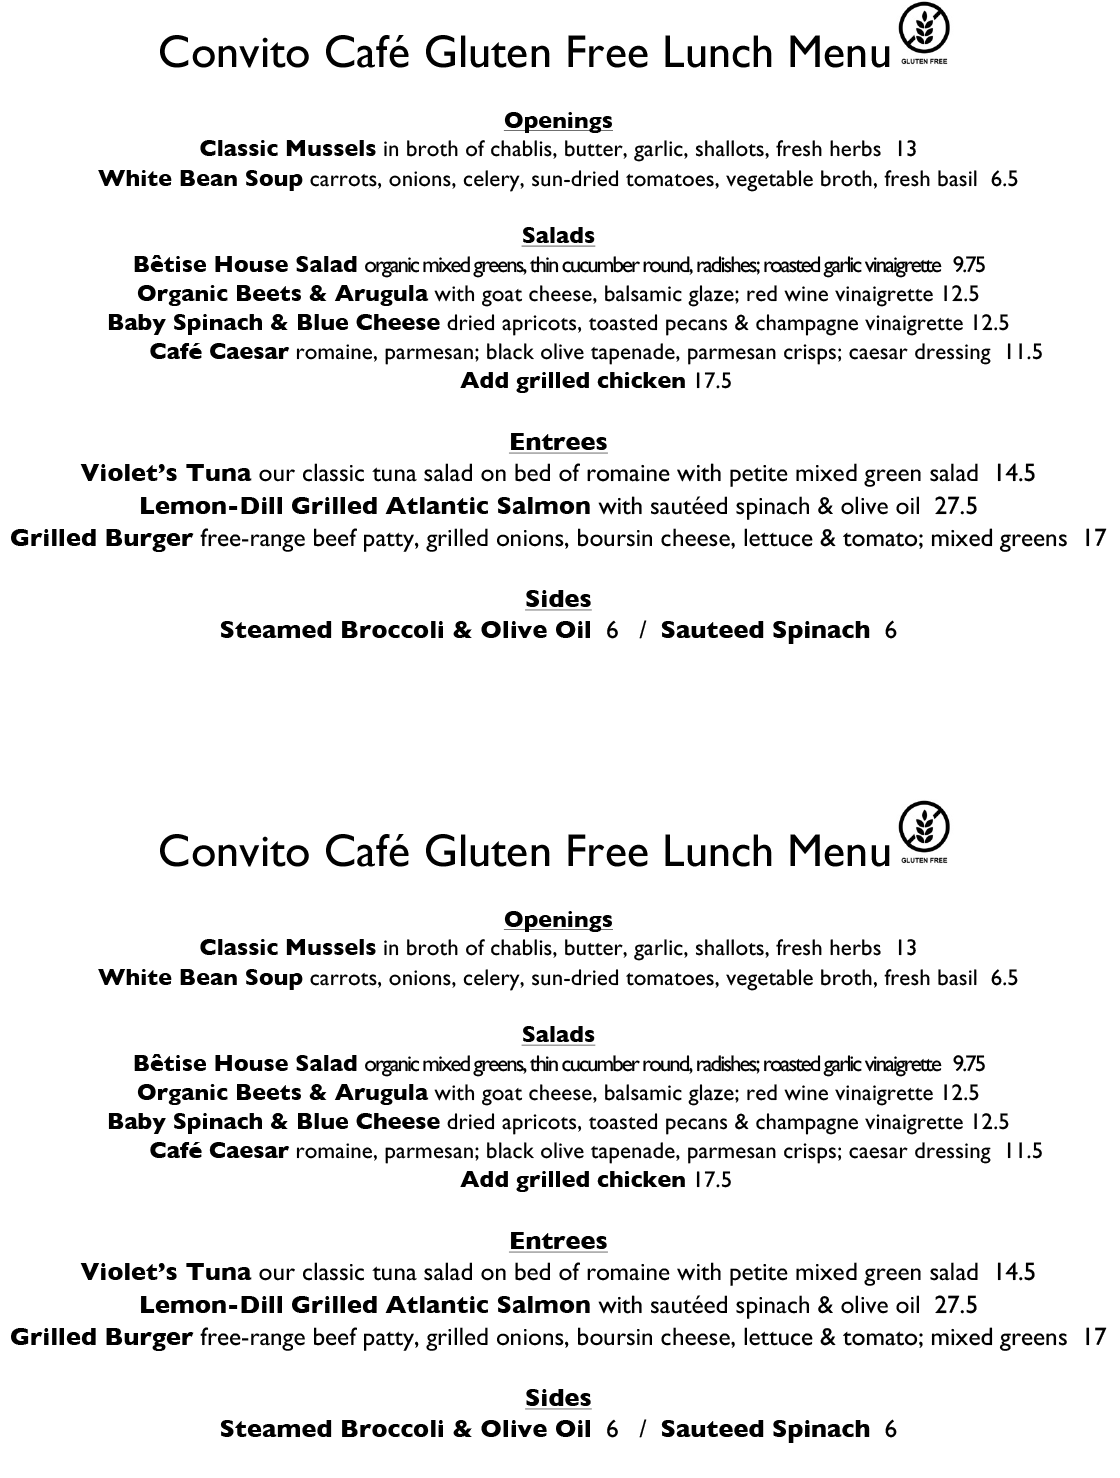 Convito Cafe Gluten Free Dinner